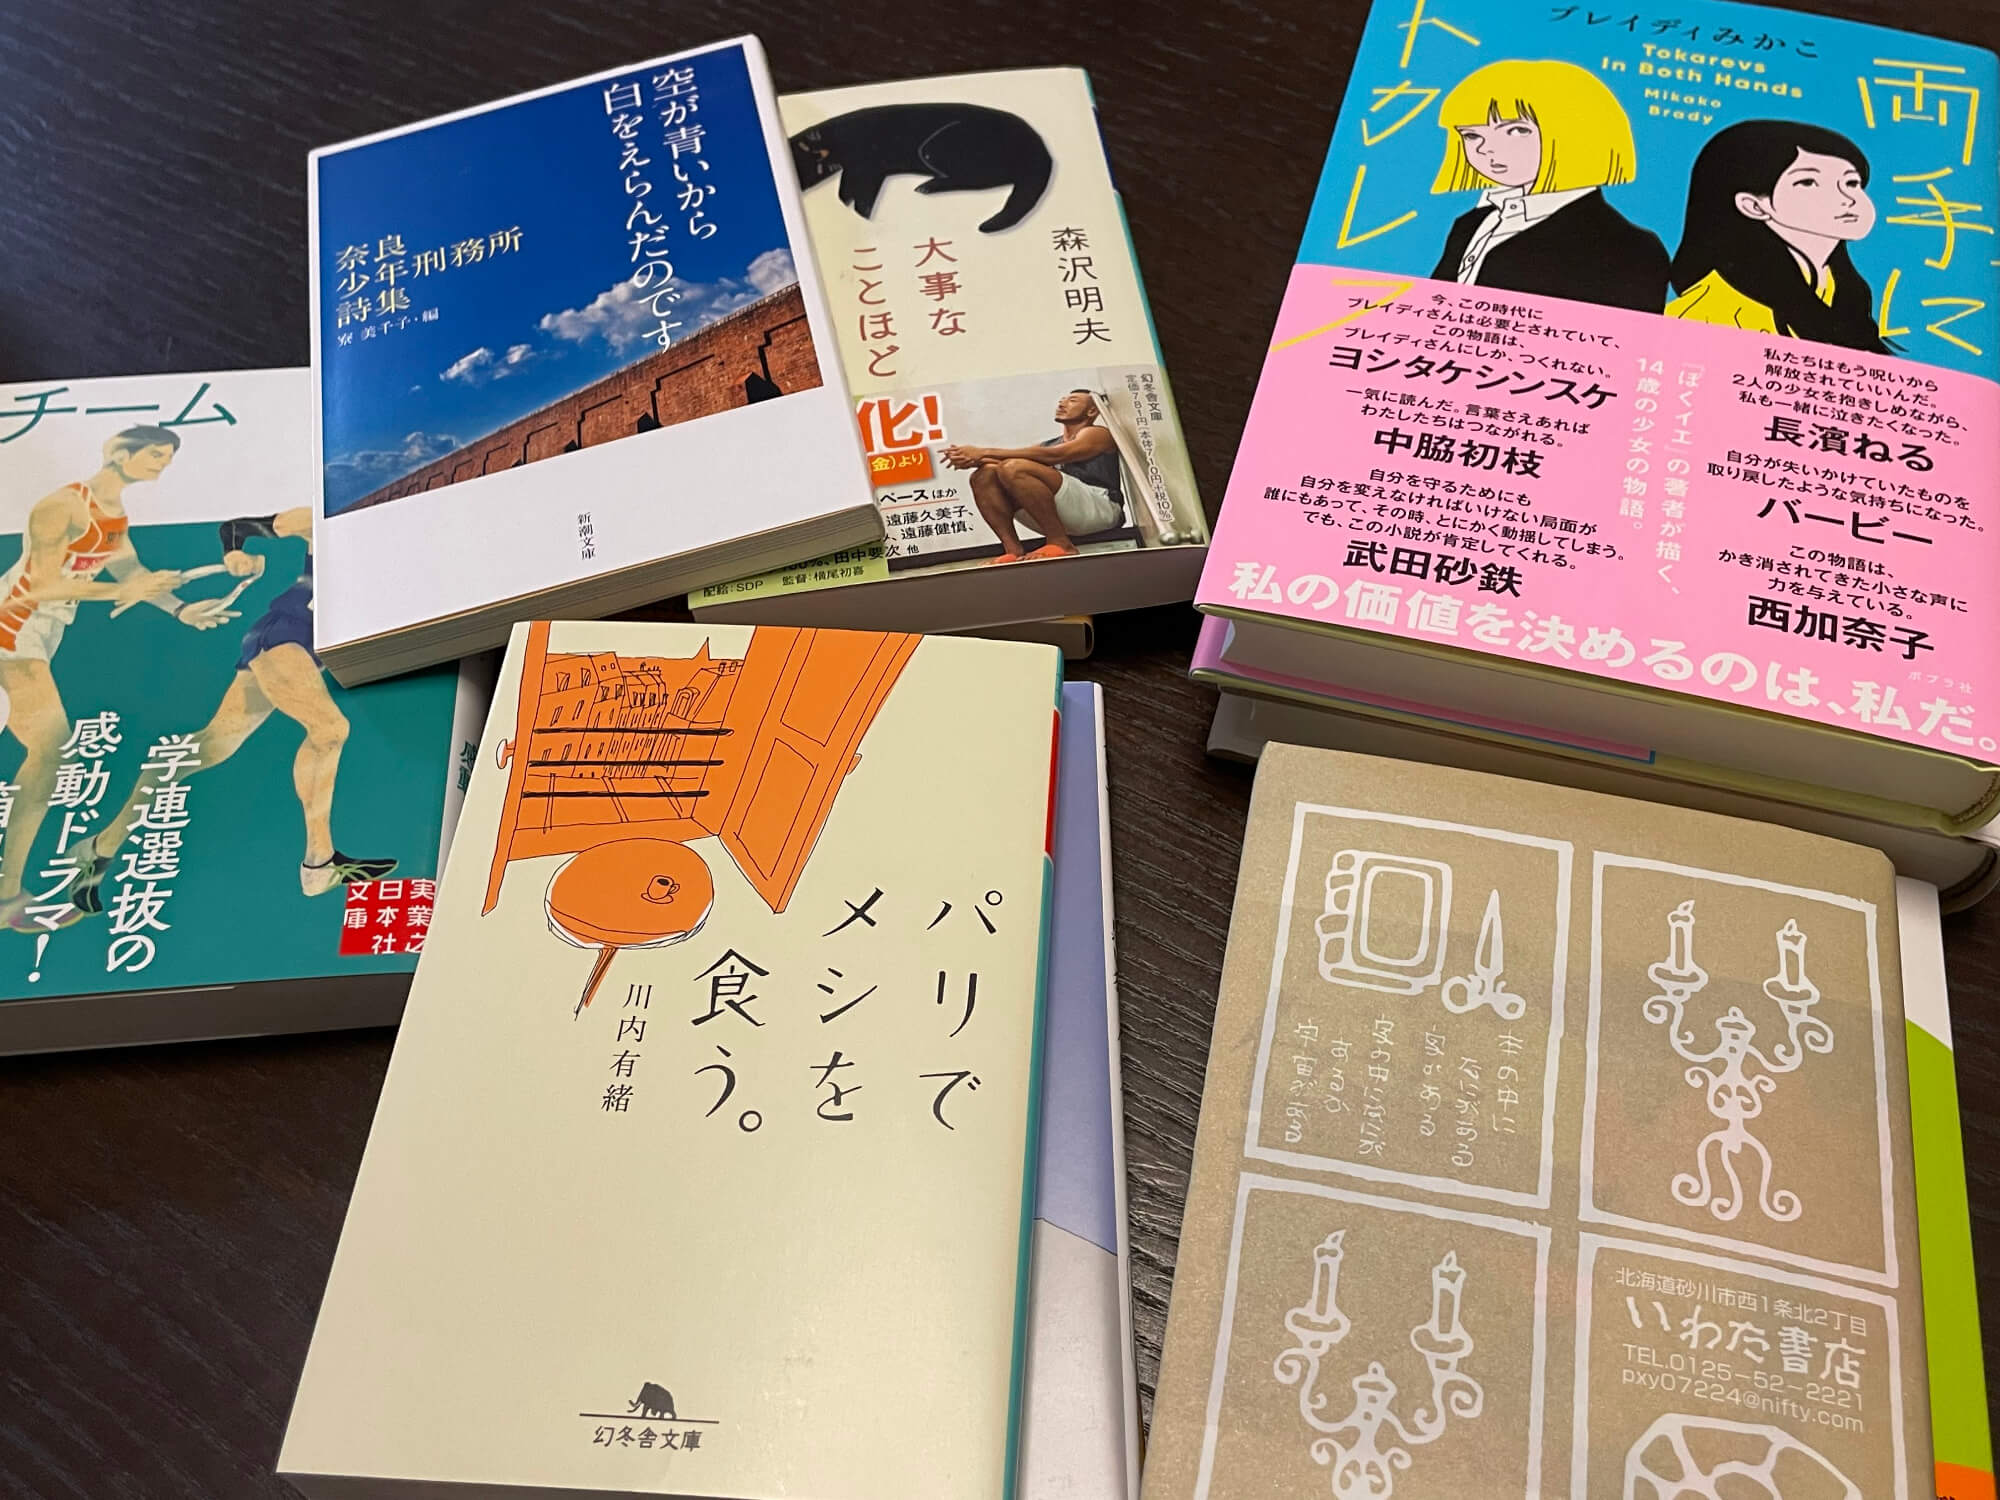 いわた書店「一万円選書」で届いた本13冊を紹介します